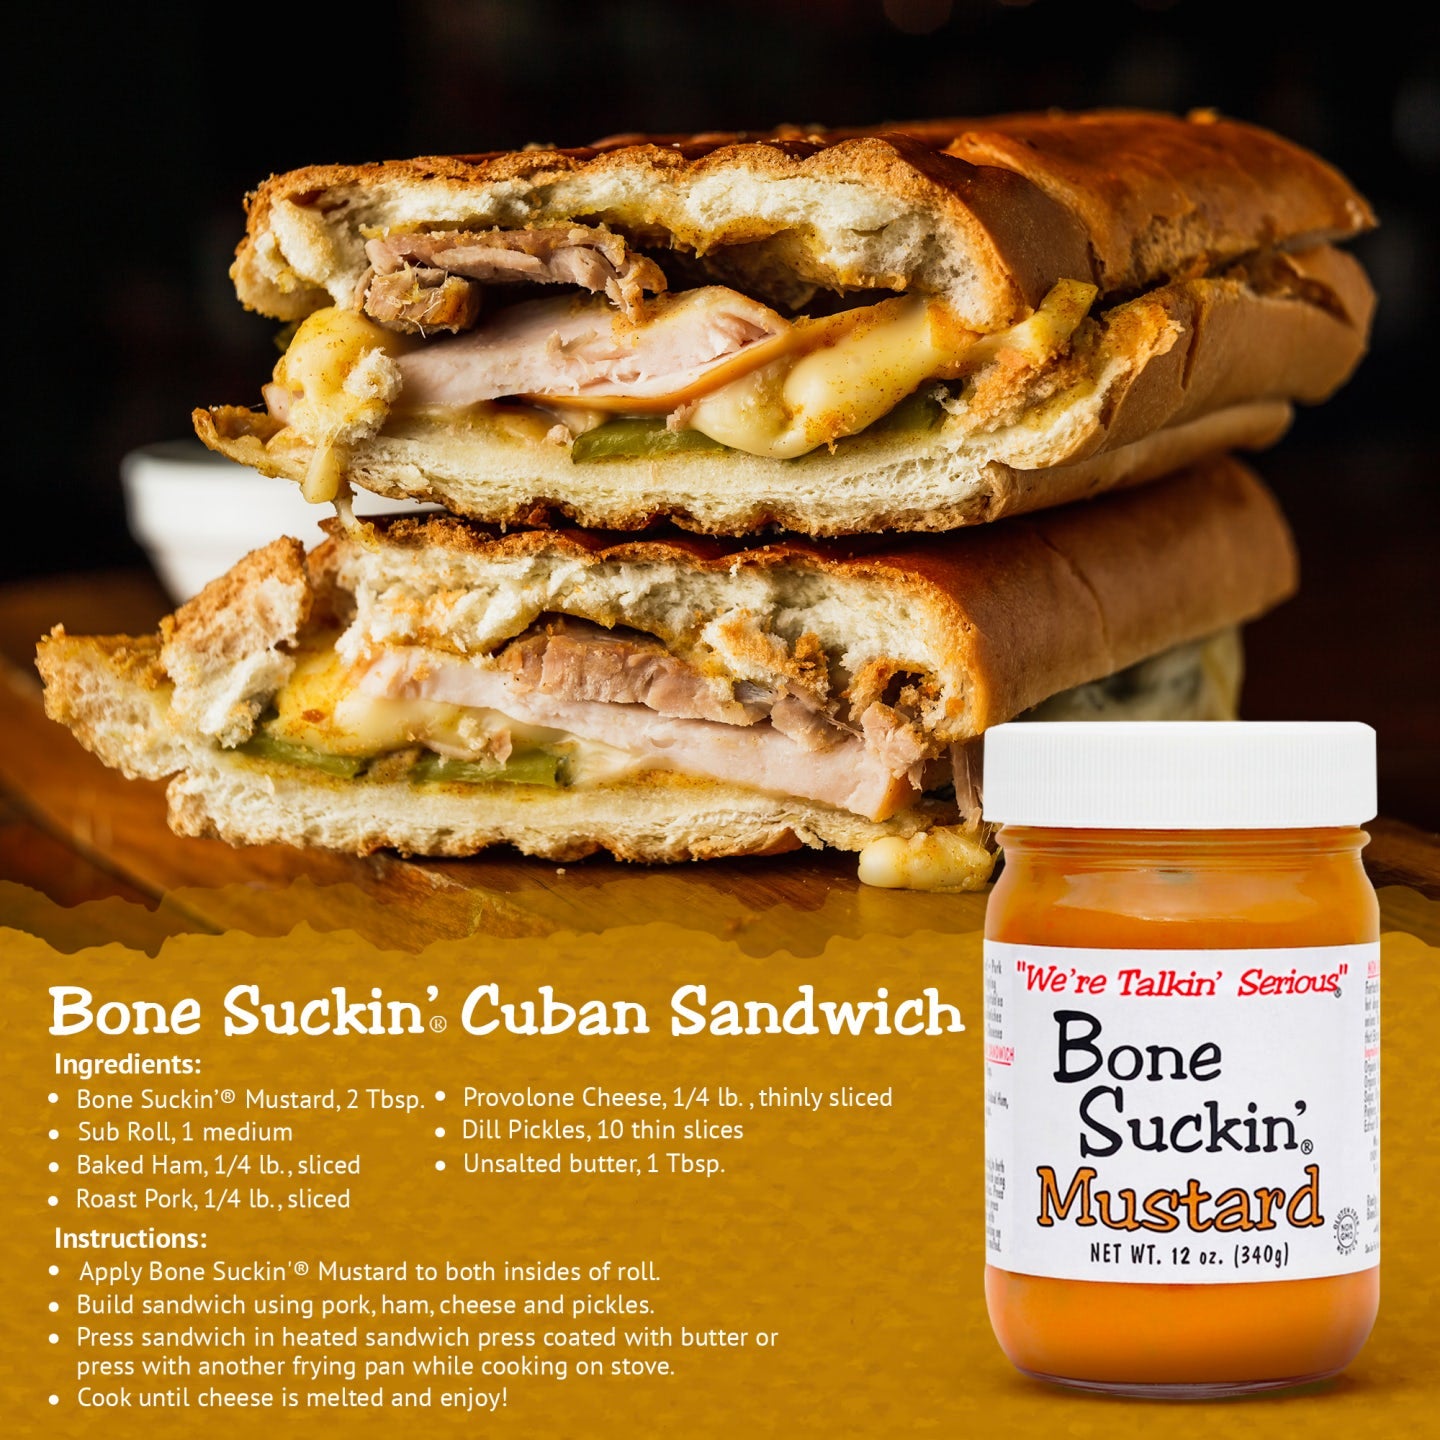 Bone Suckin' Cuban Sandwich